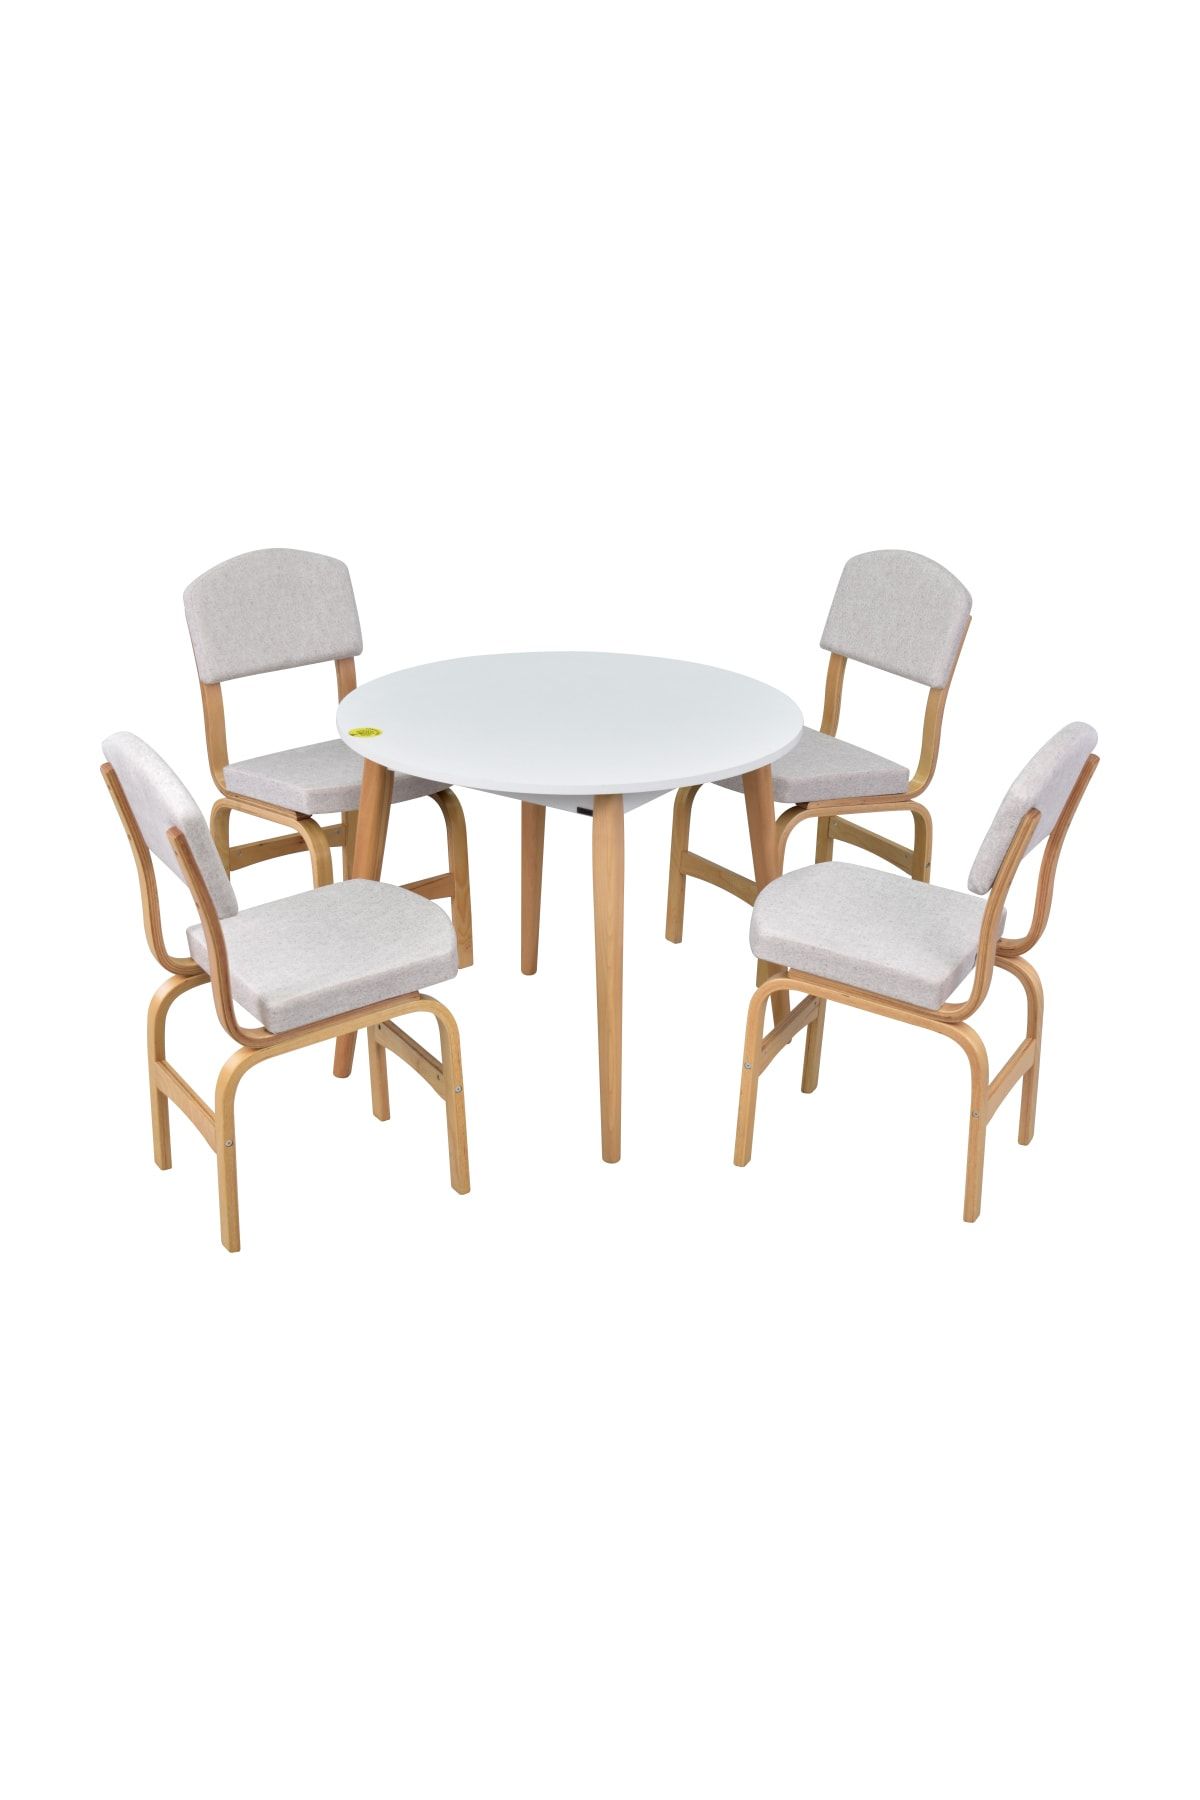 VİLİNZE Ege Sandalye Avanos Yuvarlak Ahşap Mutfak Masası Takımı - 90x90 Cm